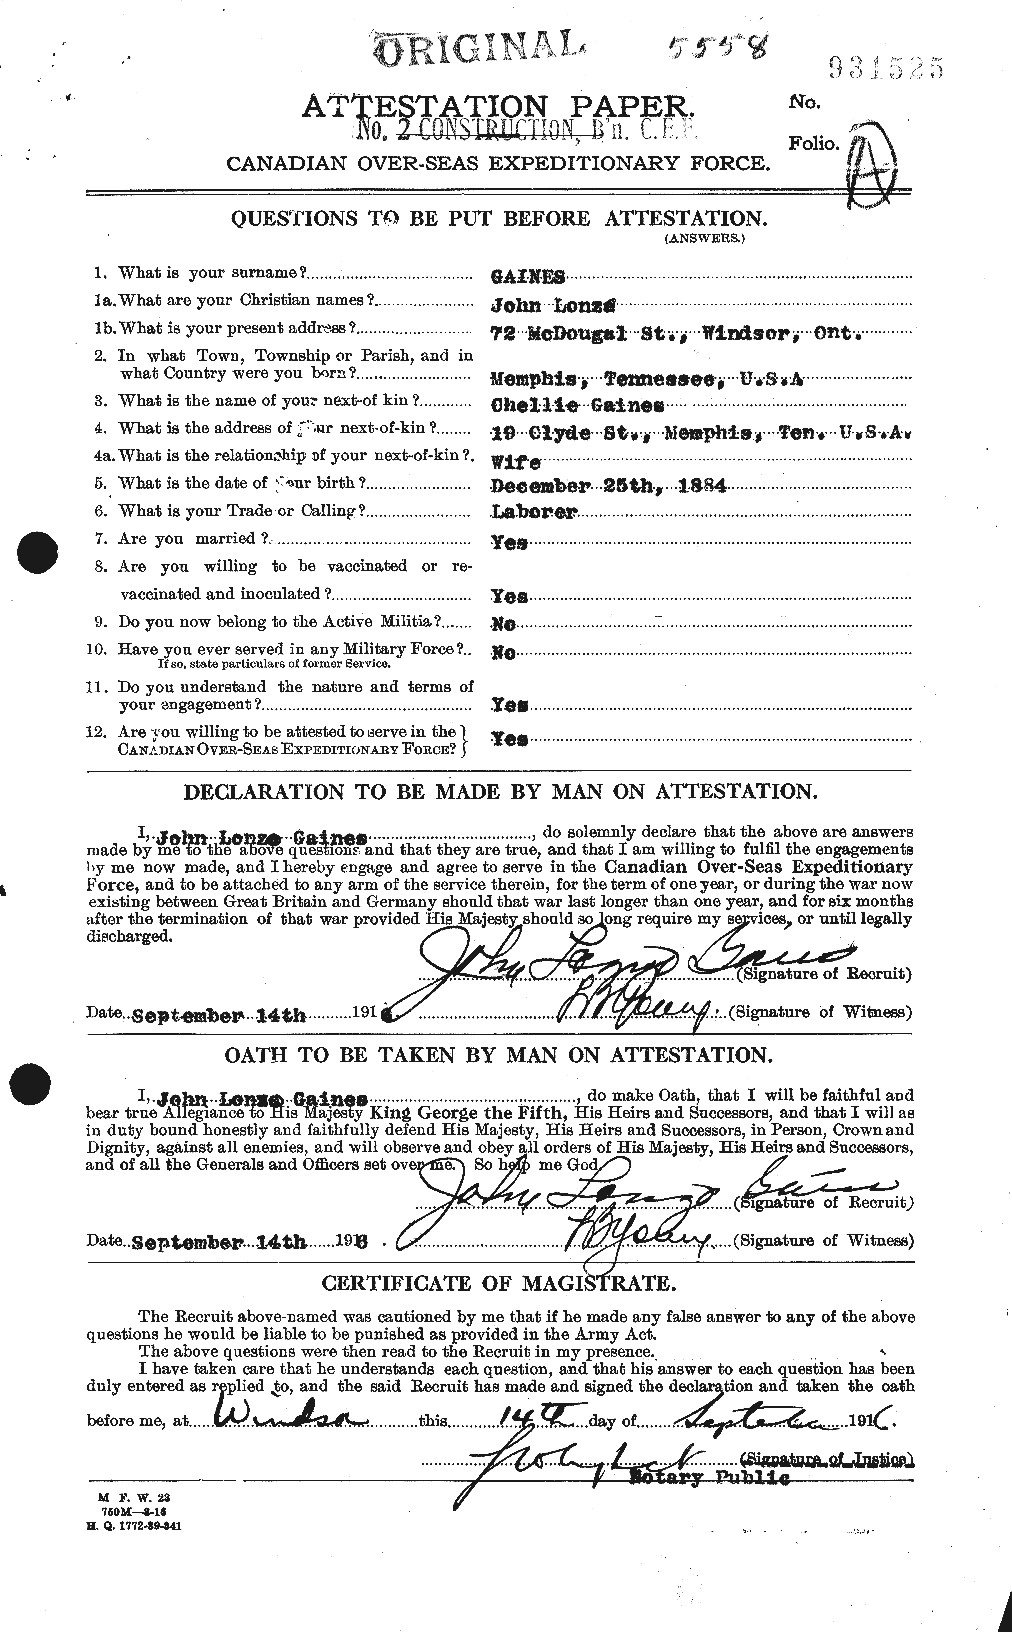 Dossiers du Personnel de la Première Guerre mondiale - CEC 341079a